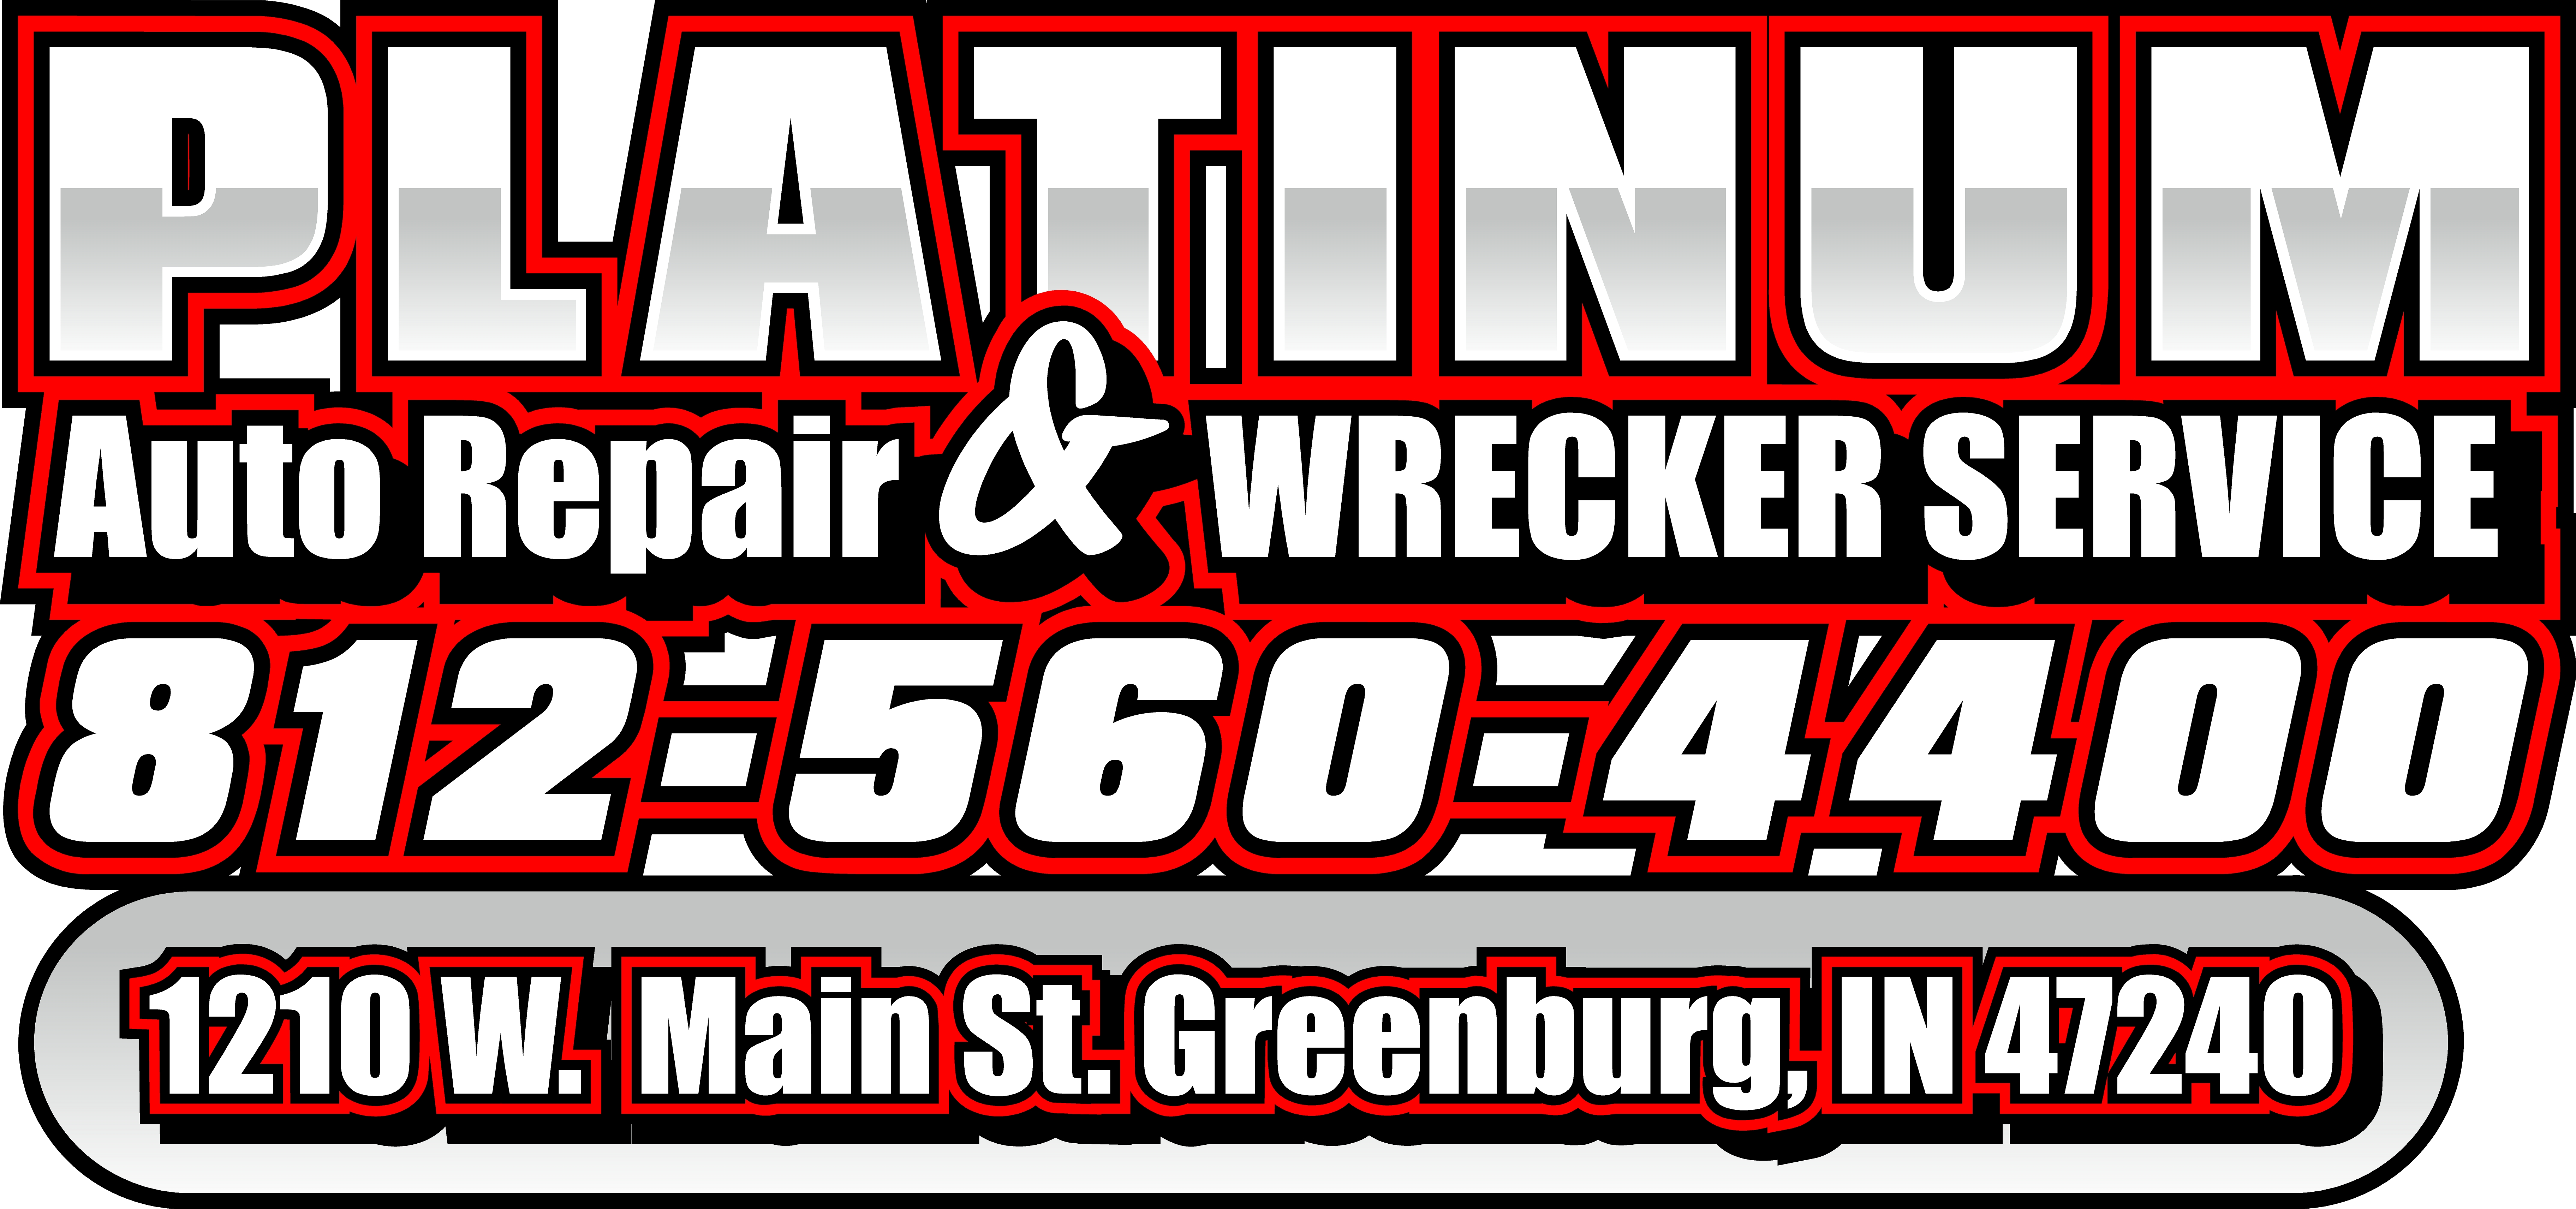 Platinum Auto Repair & Wrecker Service Logo